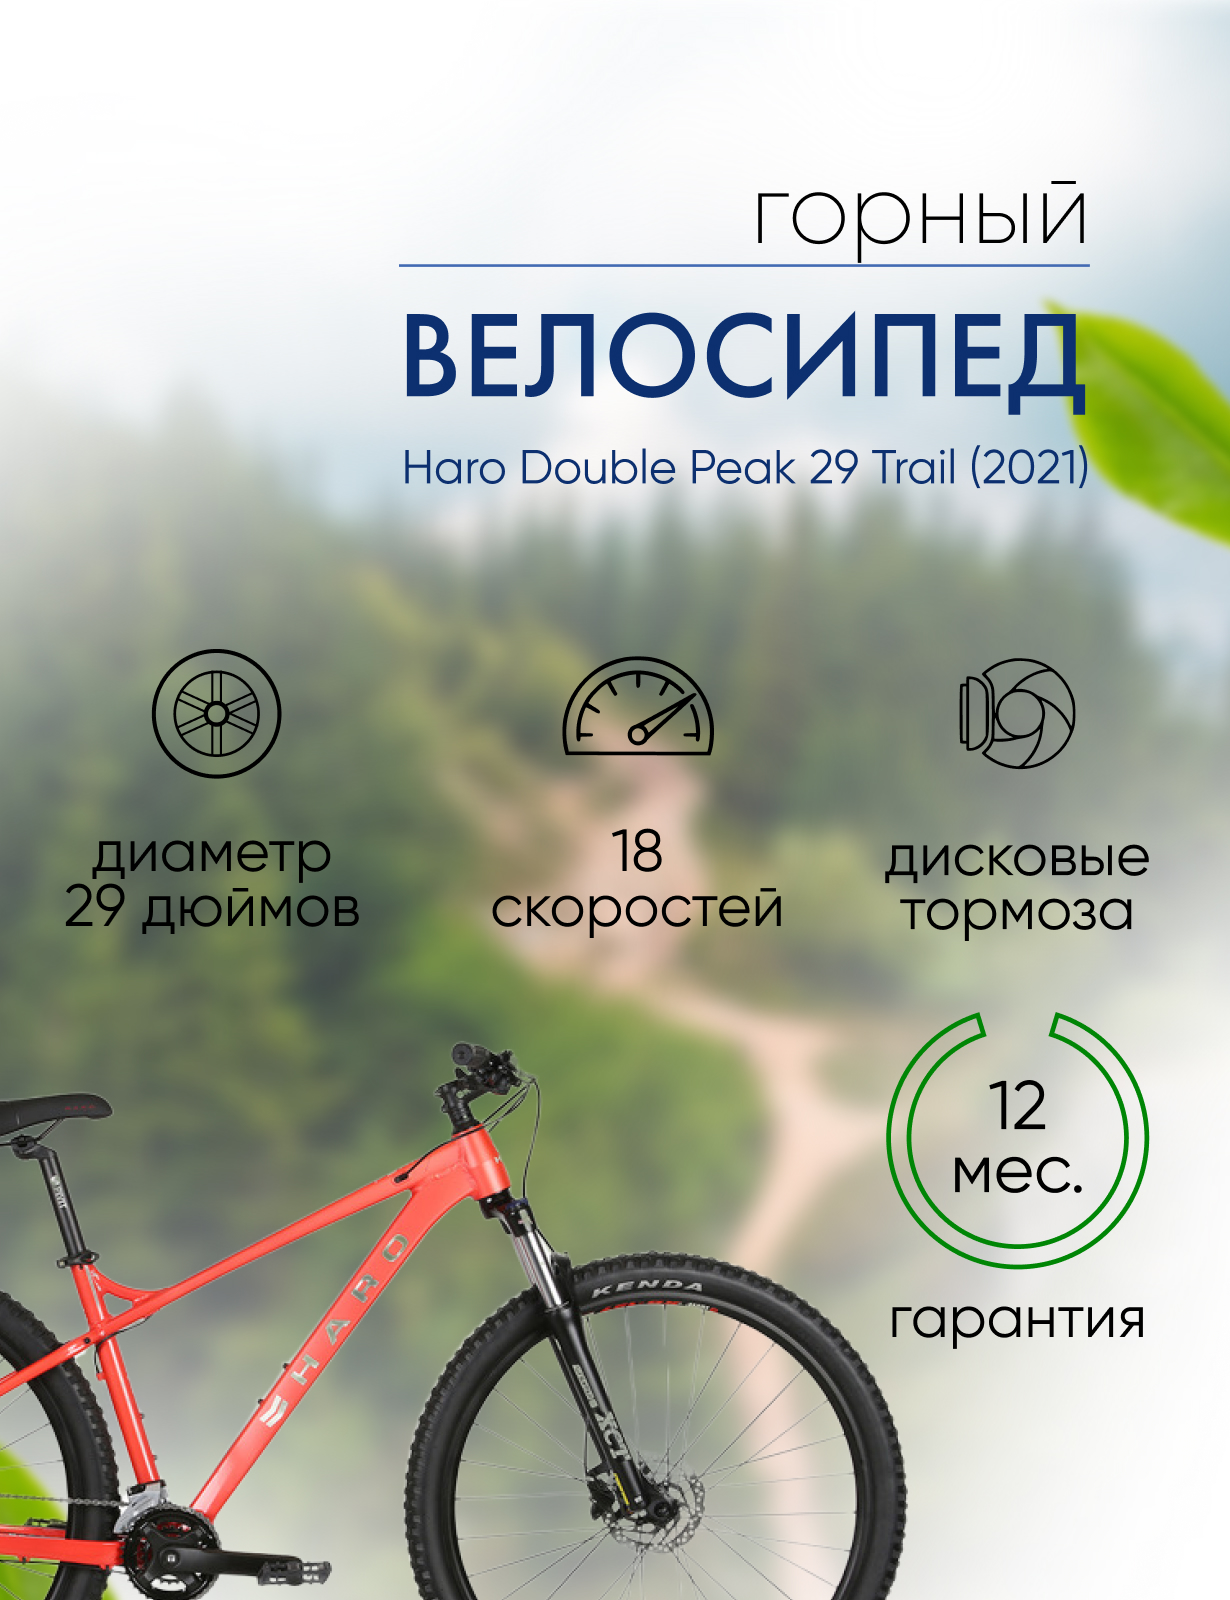 Горный велосипед Haro Double Peak 29 Trail, год 2021, цвет Красный, ростовка 18